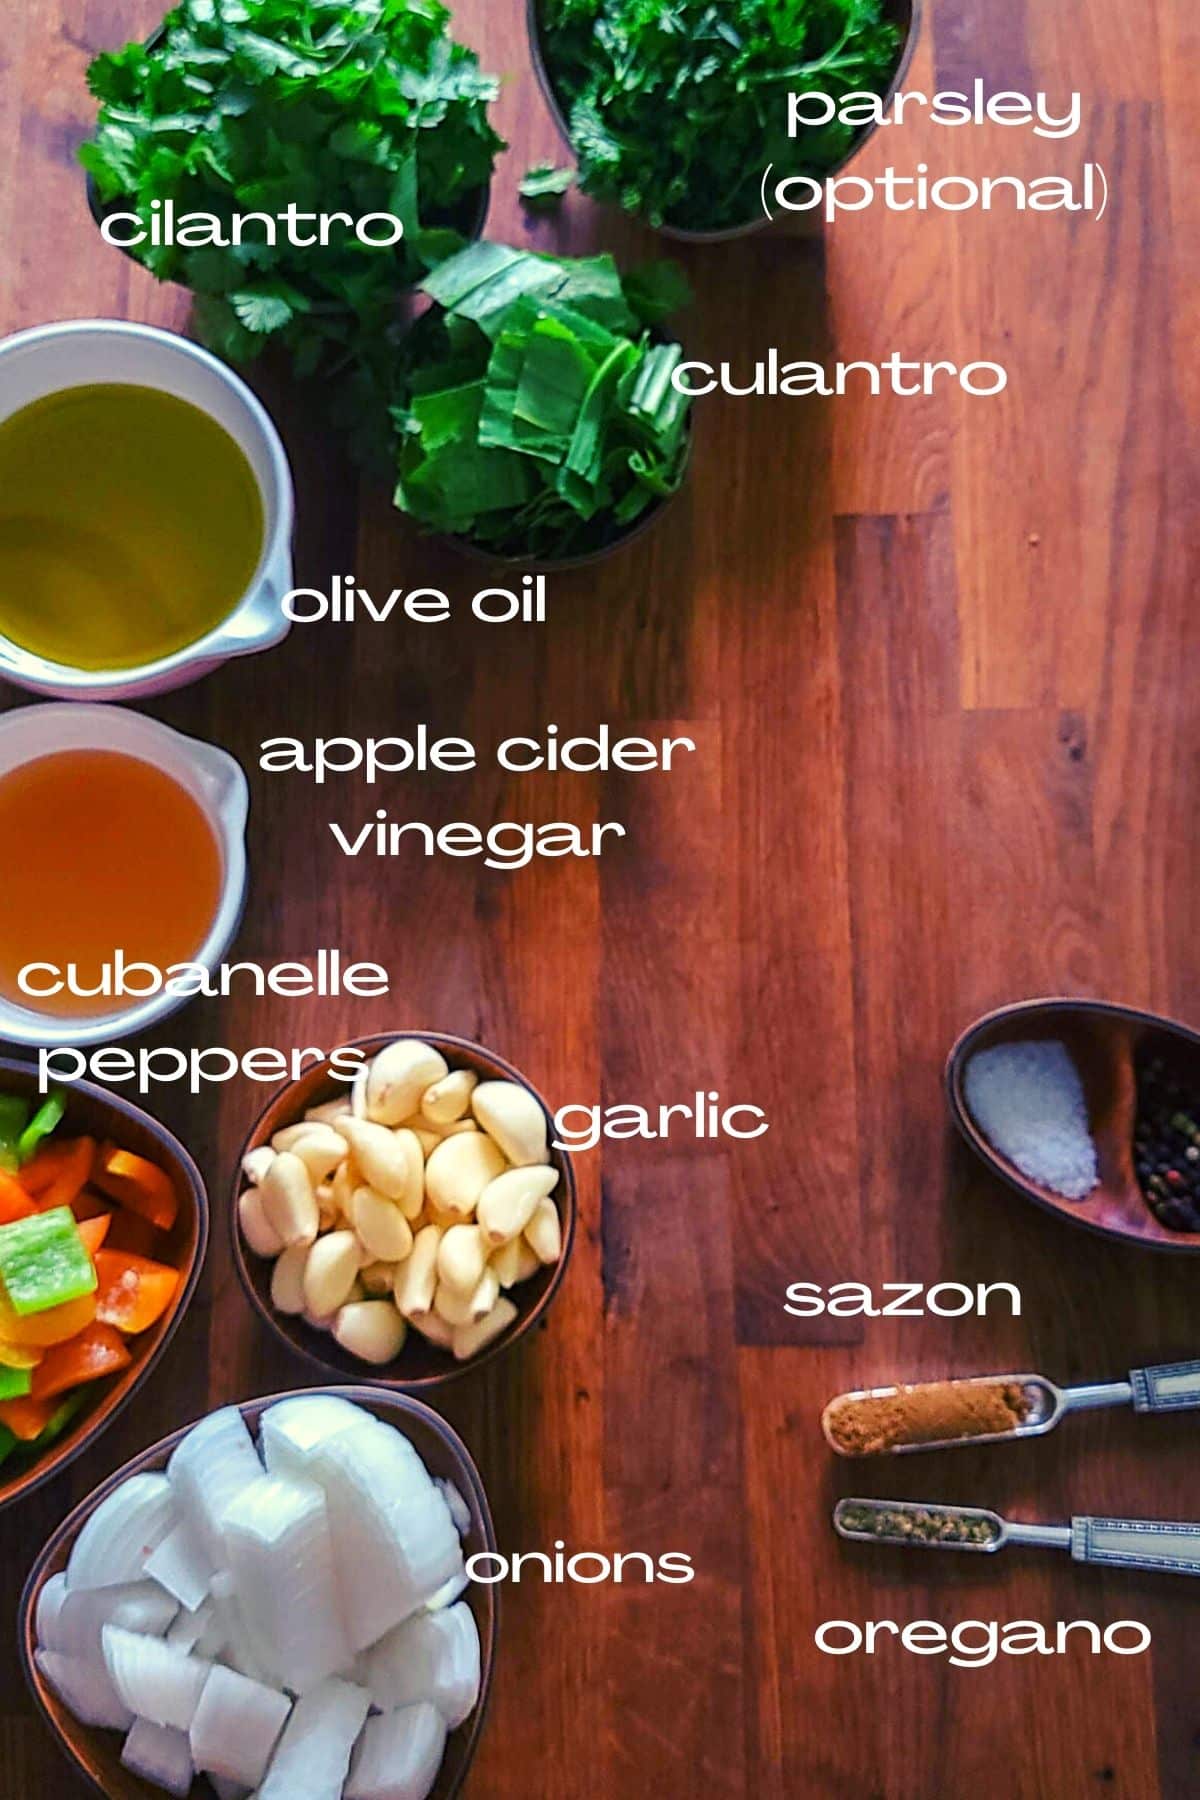 ingredients in sofrito: onion, garlic, pepper, vinegar, oil, culantro, cilantro, parsley, salt, pepper, salon, oregano